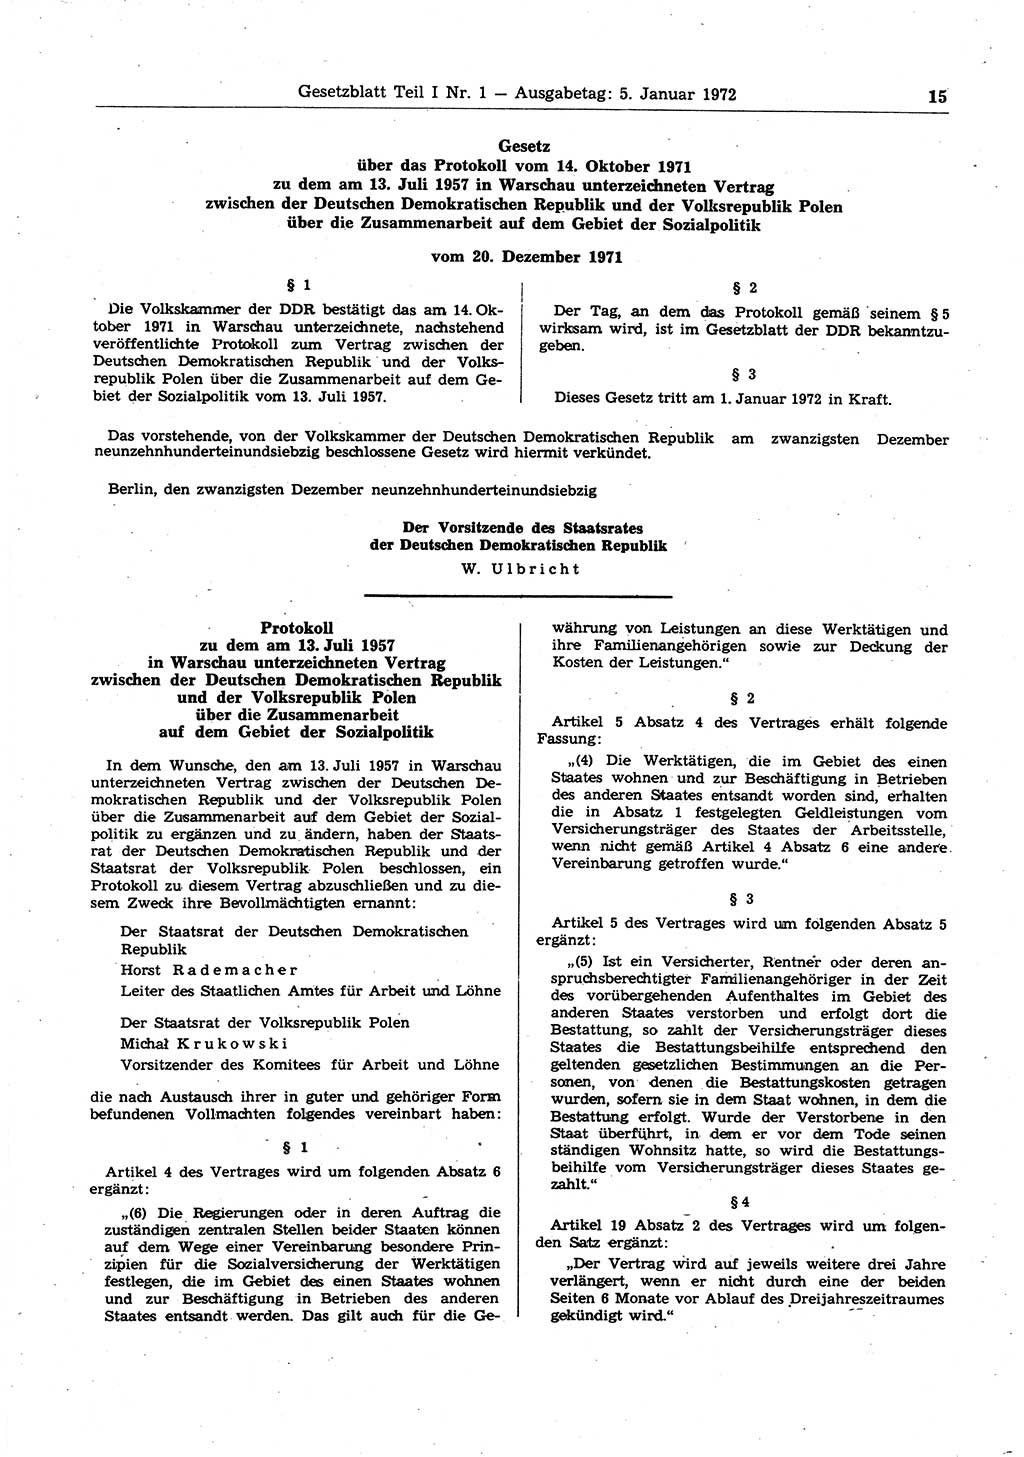 Gesetzblatt (GBl.) der Deutschen Demokratischen Republik (DDR) Teil Ⅰ 1972, Seite 15 (GBl. DDR Ⅰ 1972, S. 15)